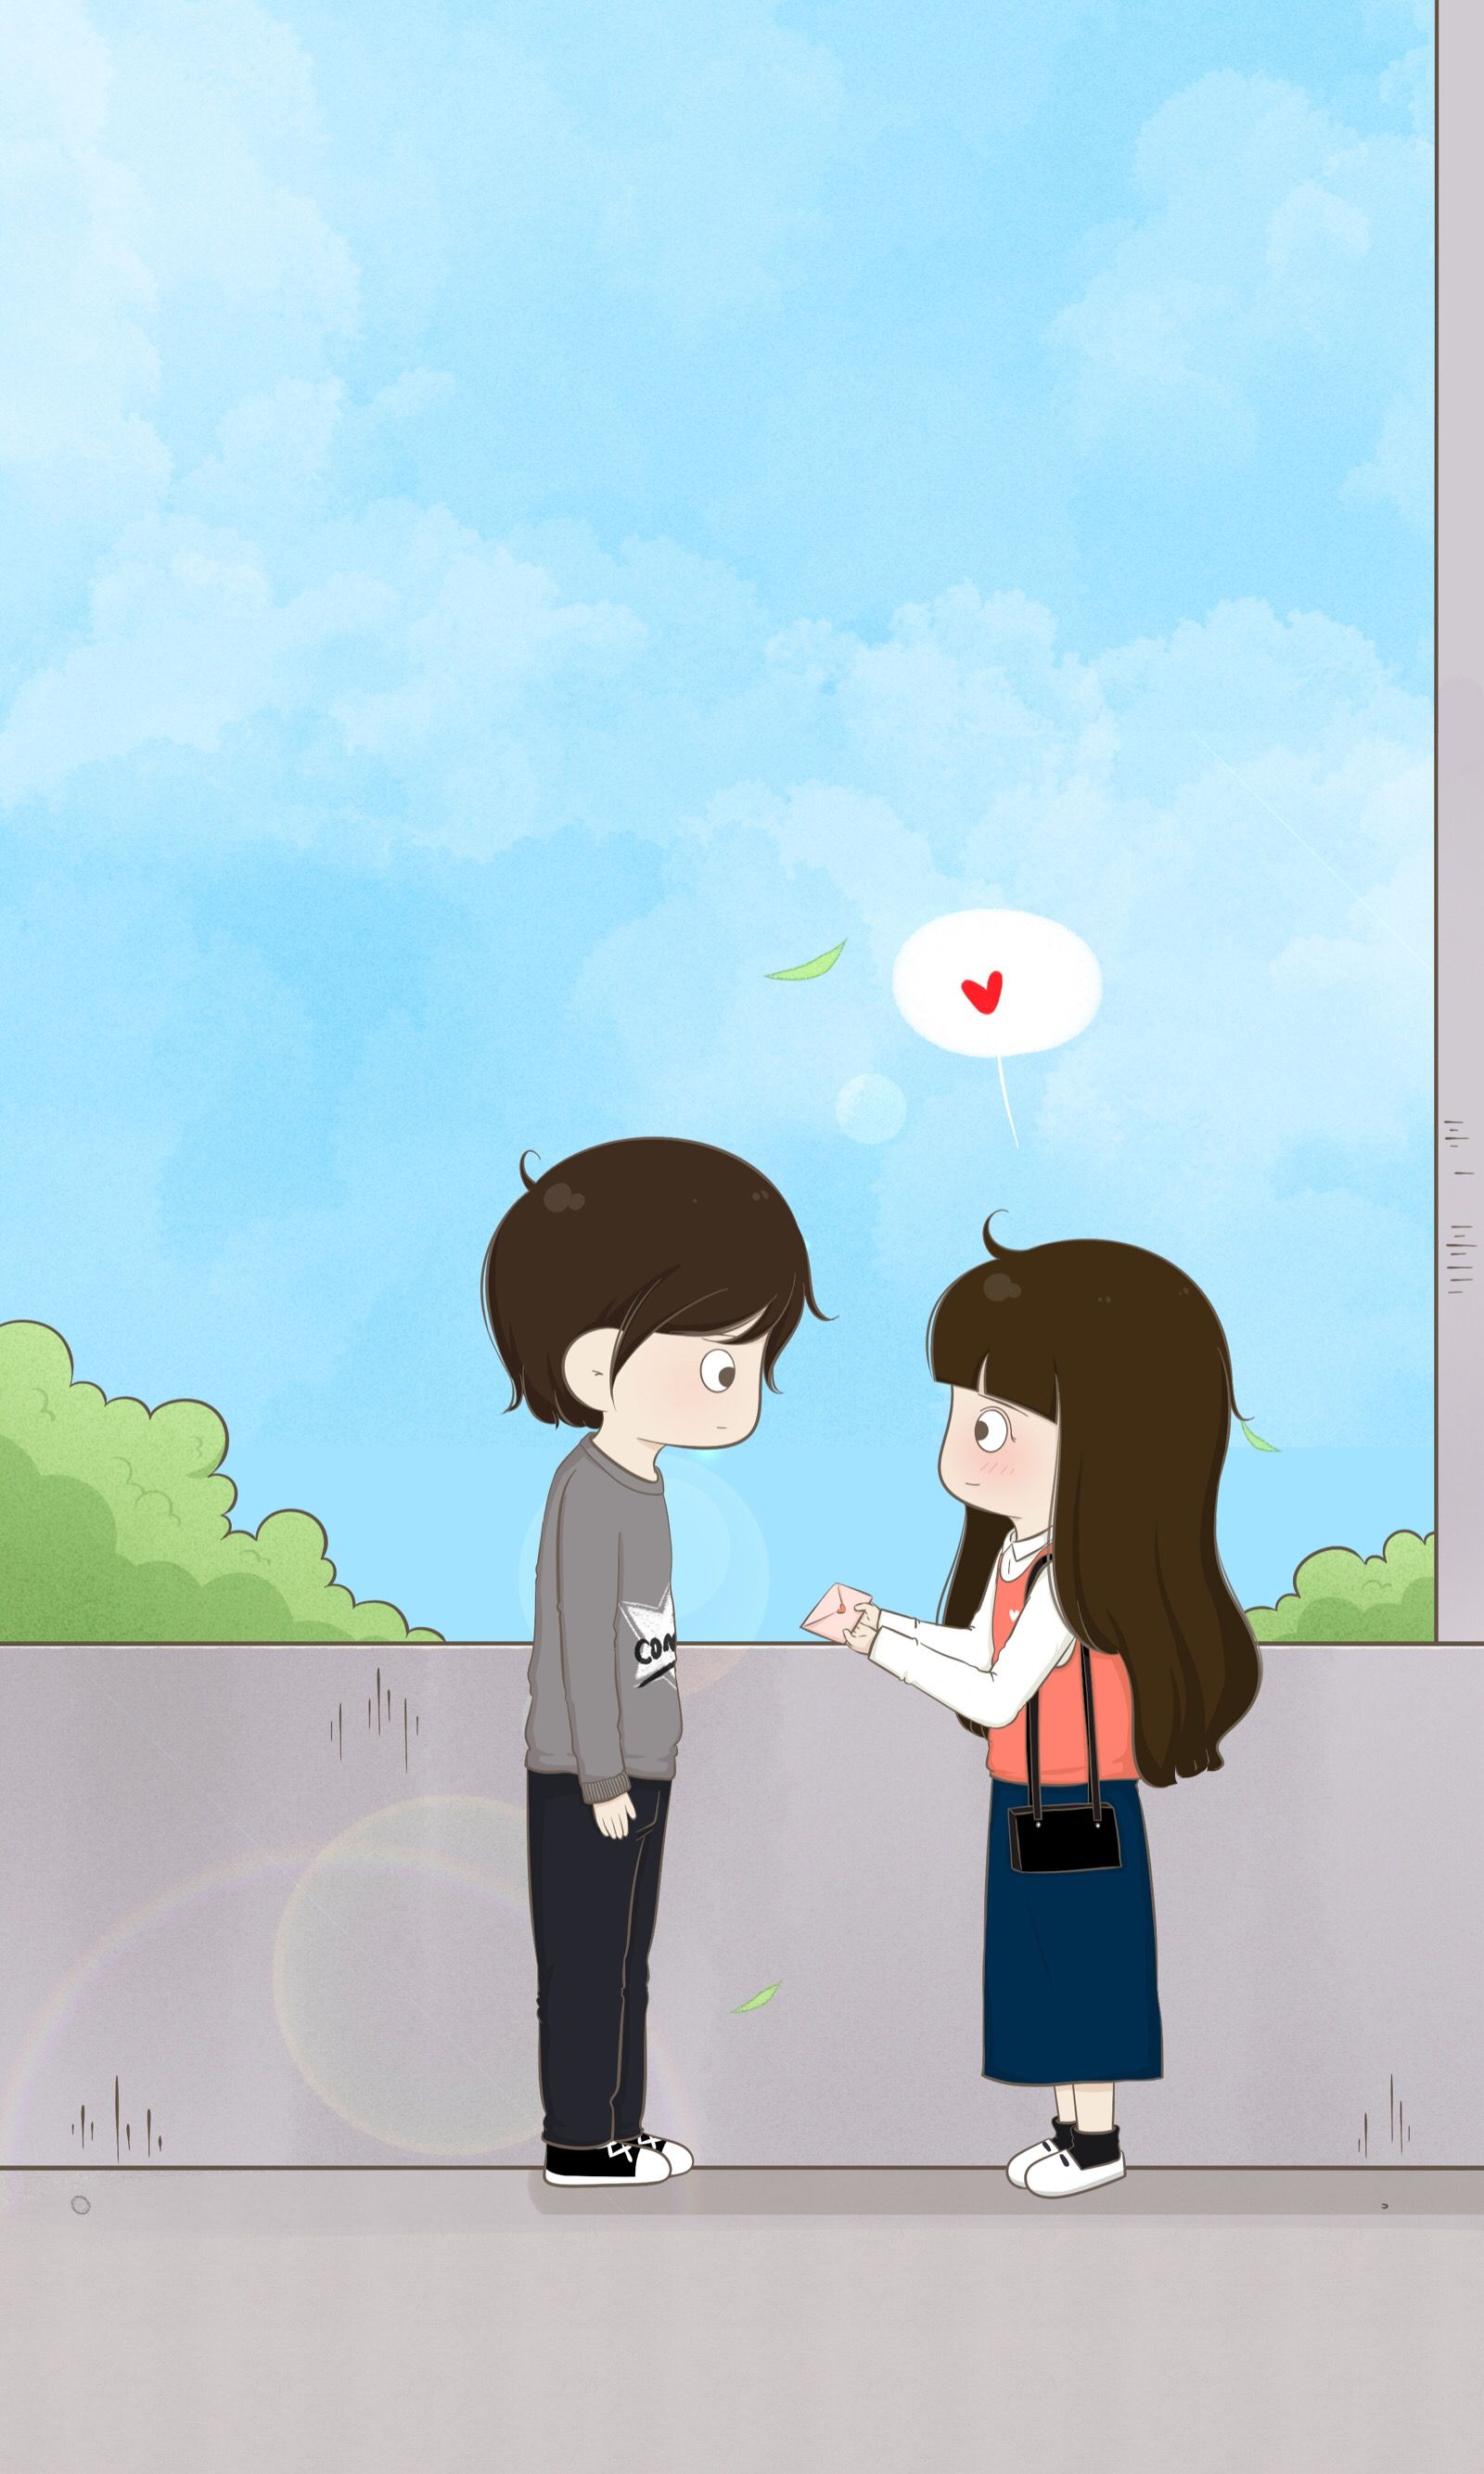 Cute Couple Goals Cartoon Wallpapers on WallpaperDog